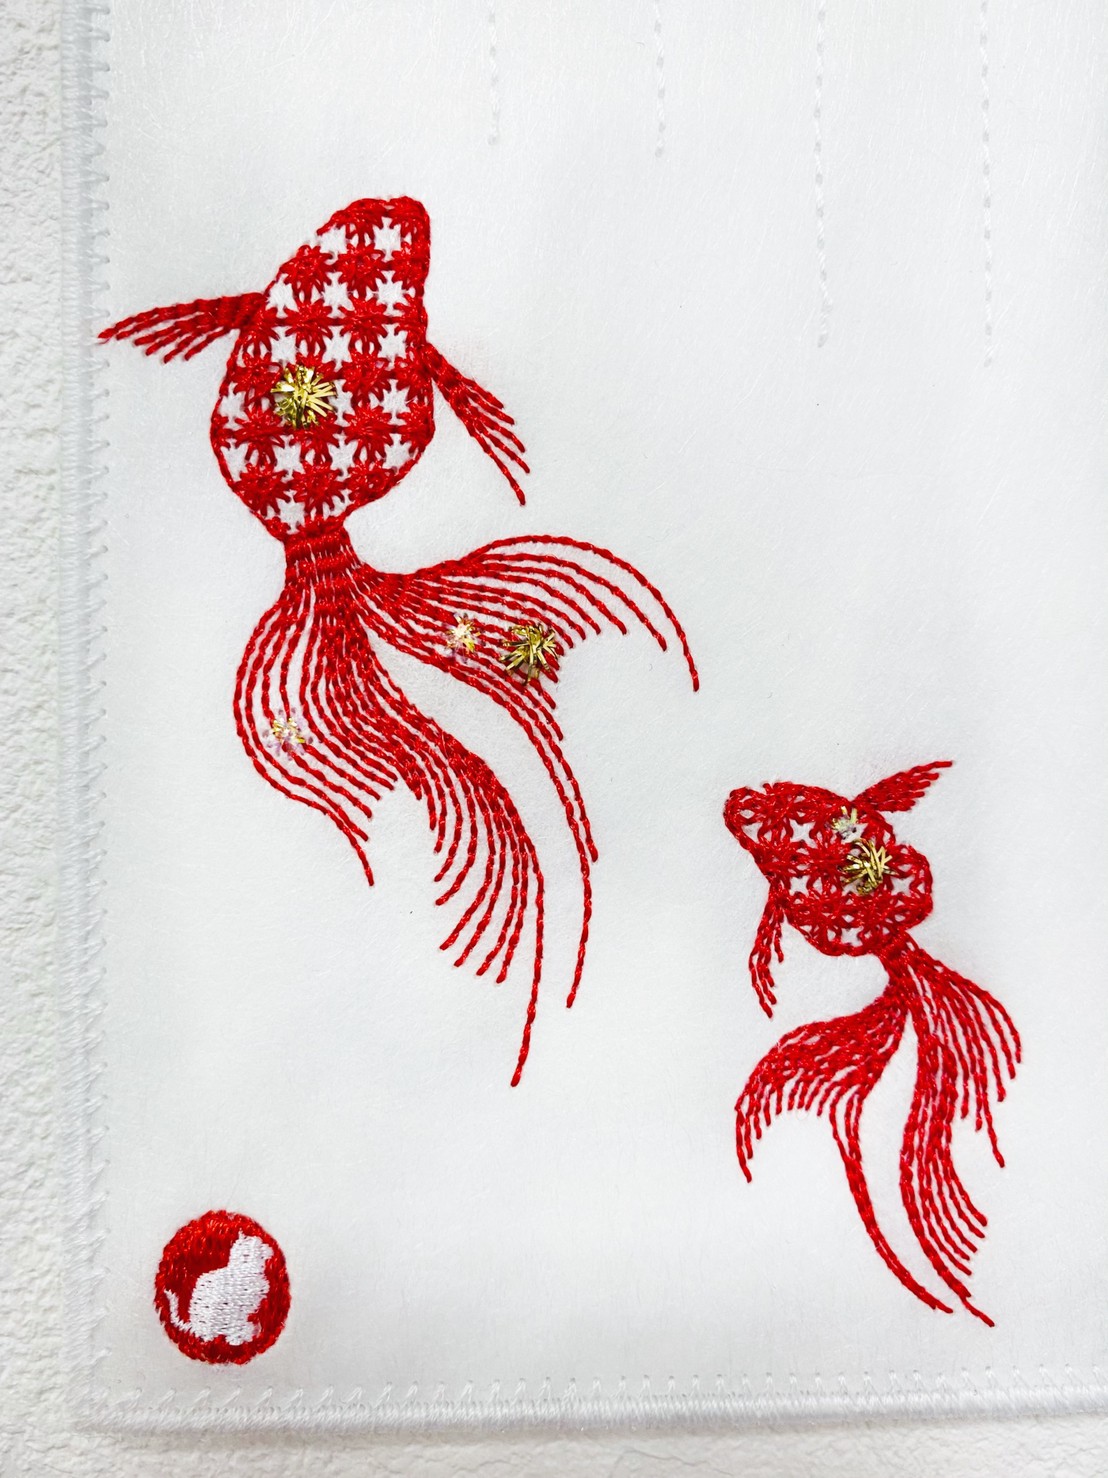 刺しゅうで作った うれしっしゅの絵はがき 夏 金魚 氷 花火 各1枚の3枚セット Iichi ハンドメイド クラフト作品 手仕事品の通販